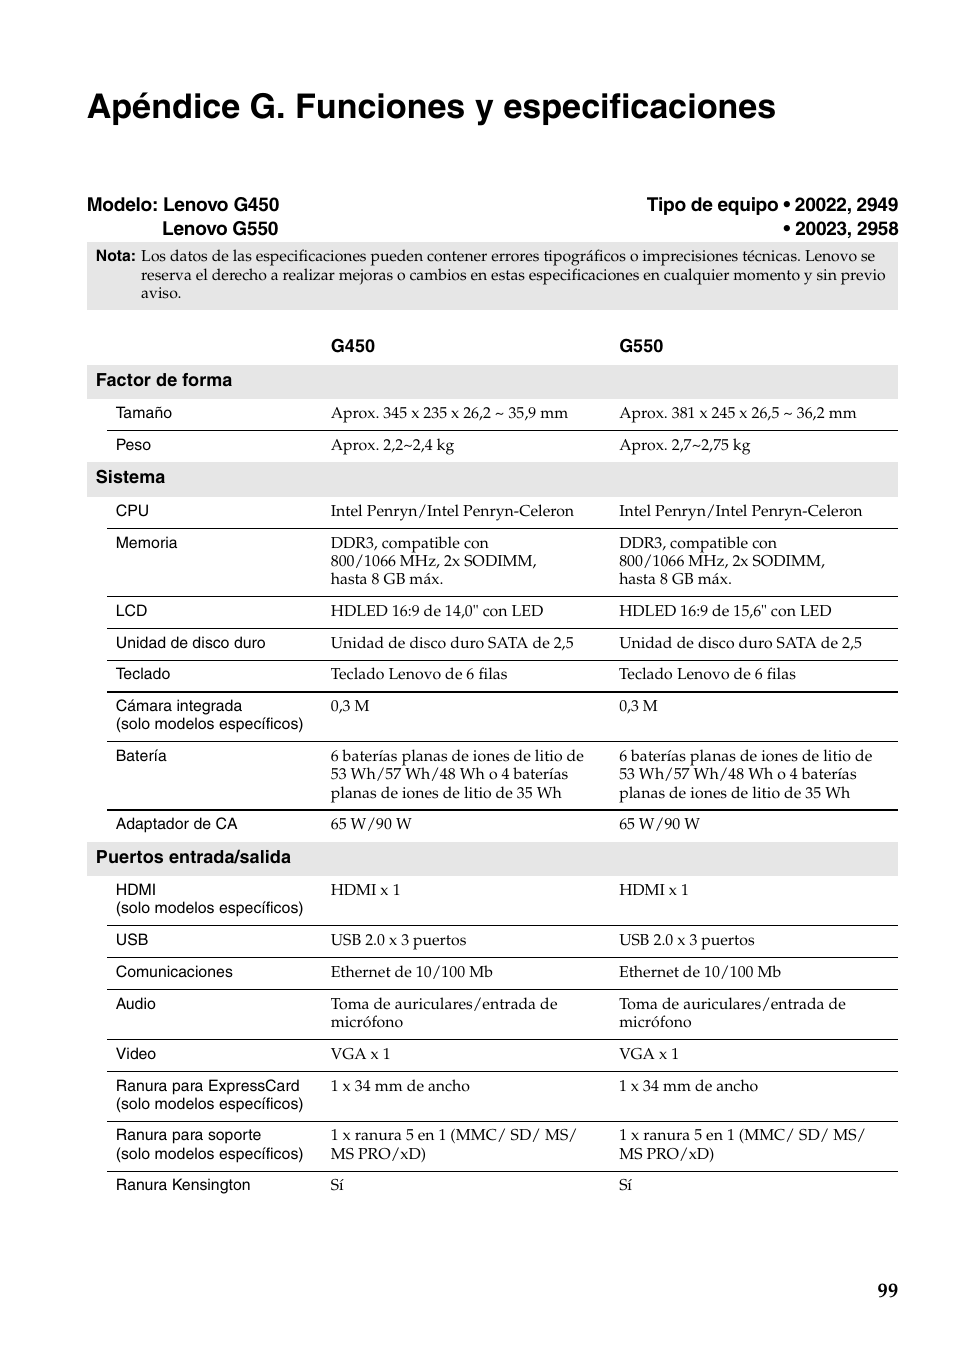 Apéndice g. funciones y especificaciones | Lenovo G450 Notebook User